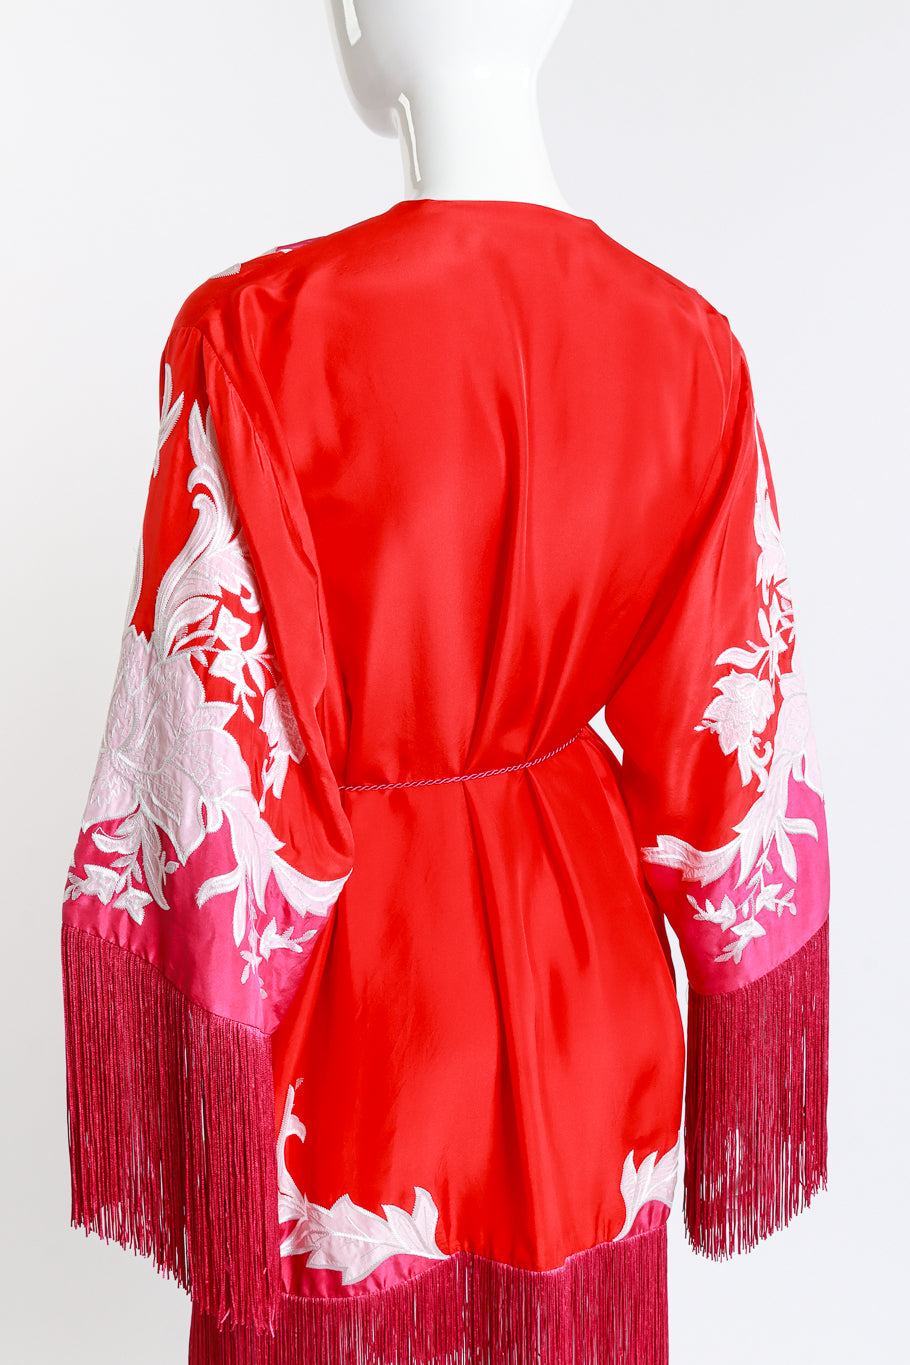 Ungaro Embroidered Floral Fringe Jacket back on mannequin closeup @recess la